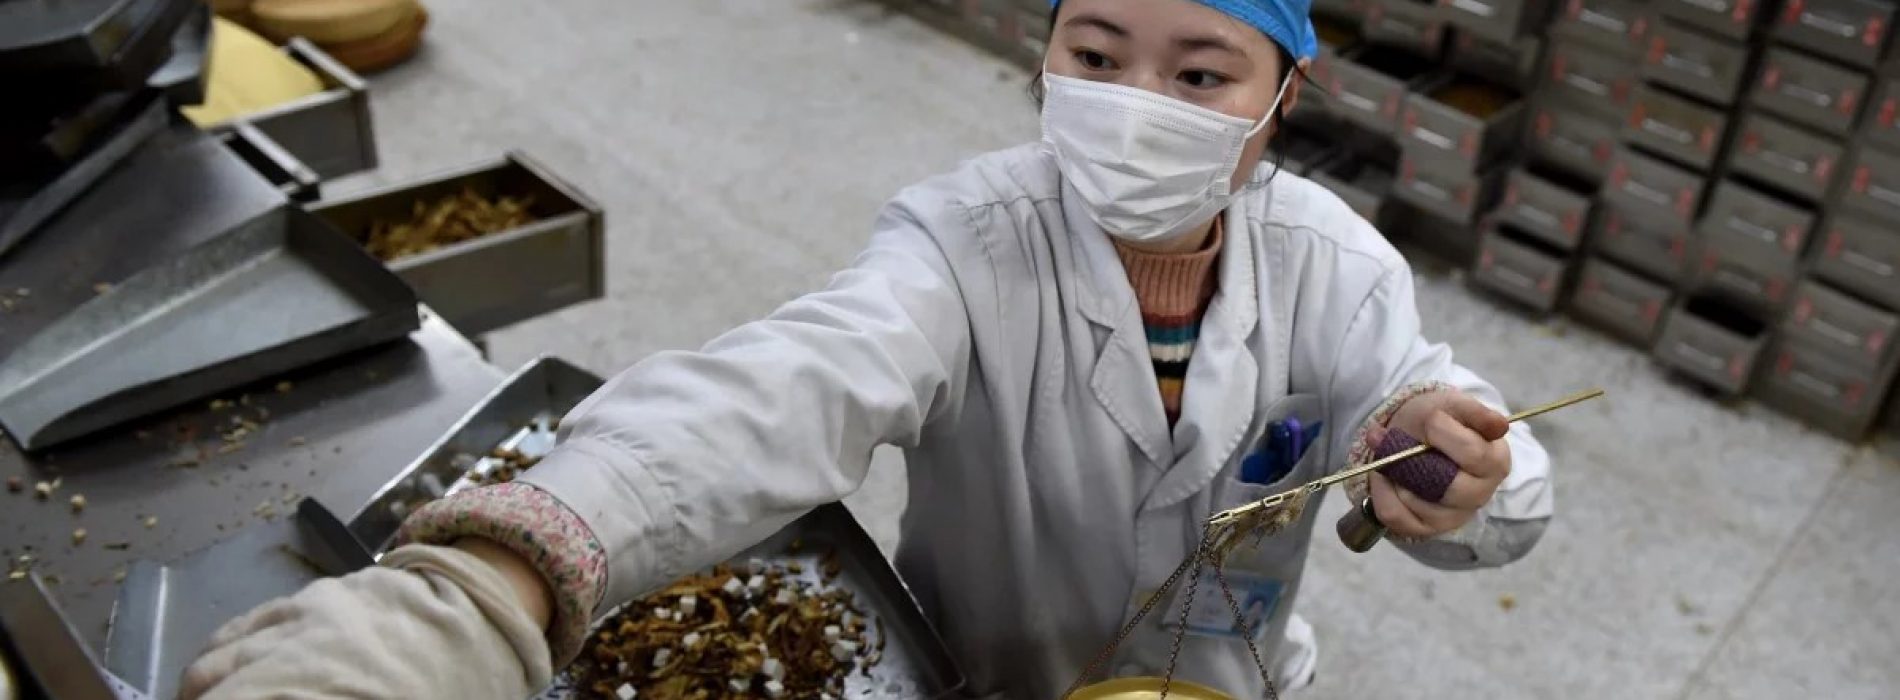 Geneeskrachtige kruiden behandelen effectief duizenden covid-19-patiënten in Chinese ziekenhuizen